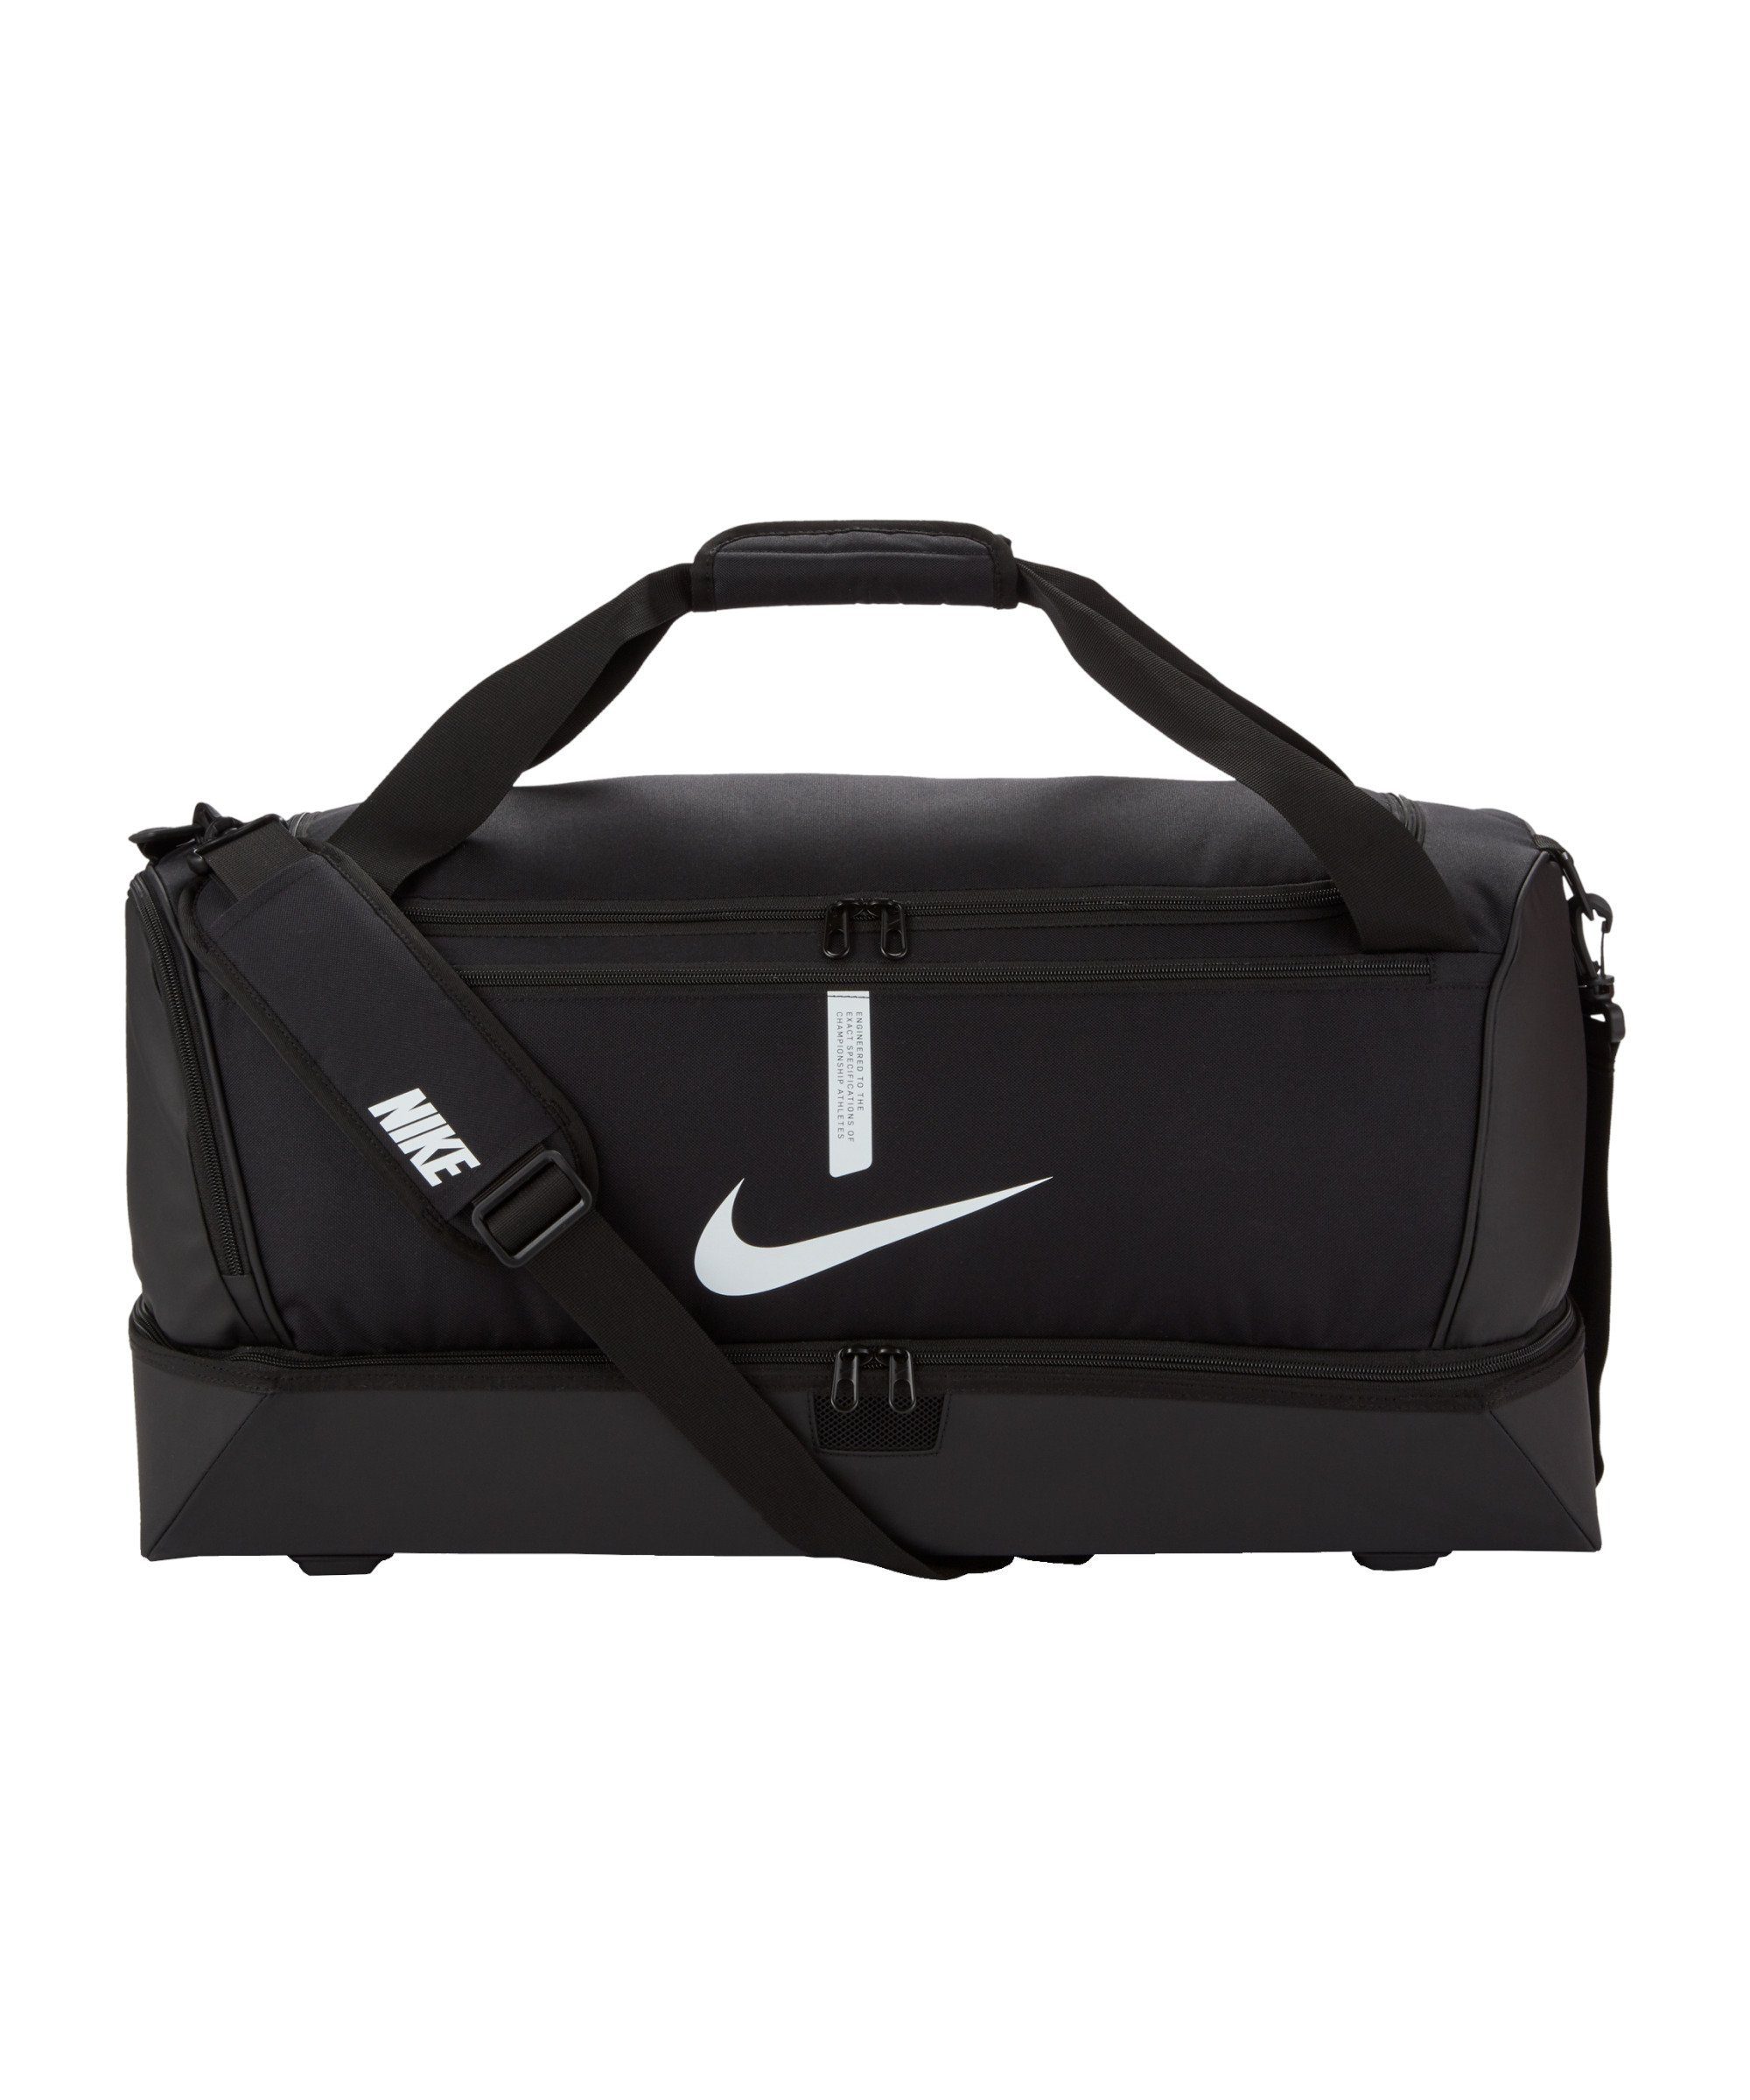 Nike Freizeittasche Academy Team Hardcase Tasche Large, Schulter schwarzweiss